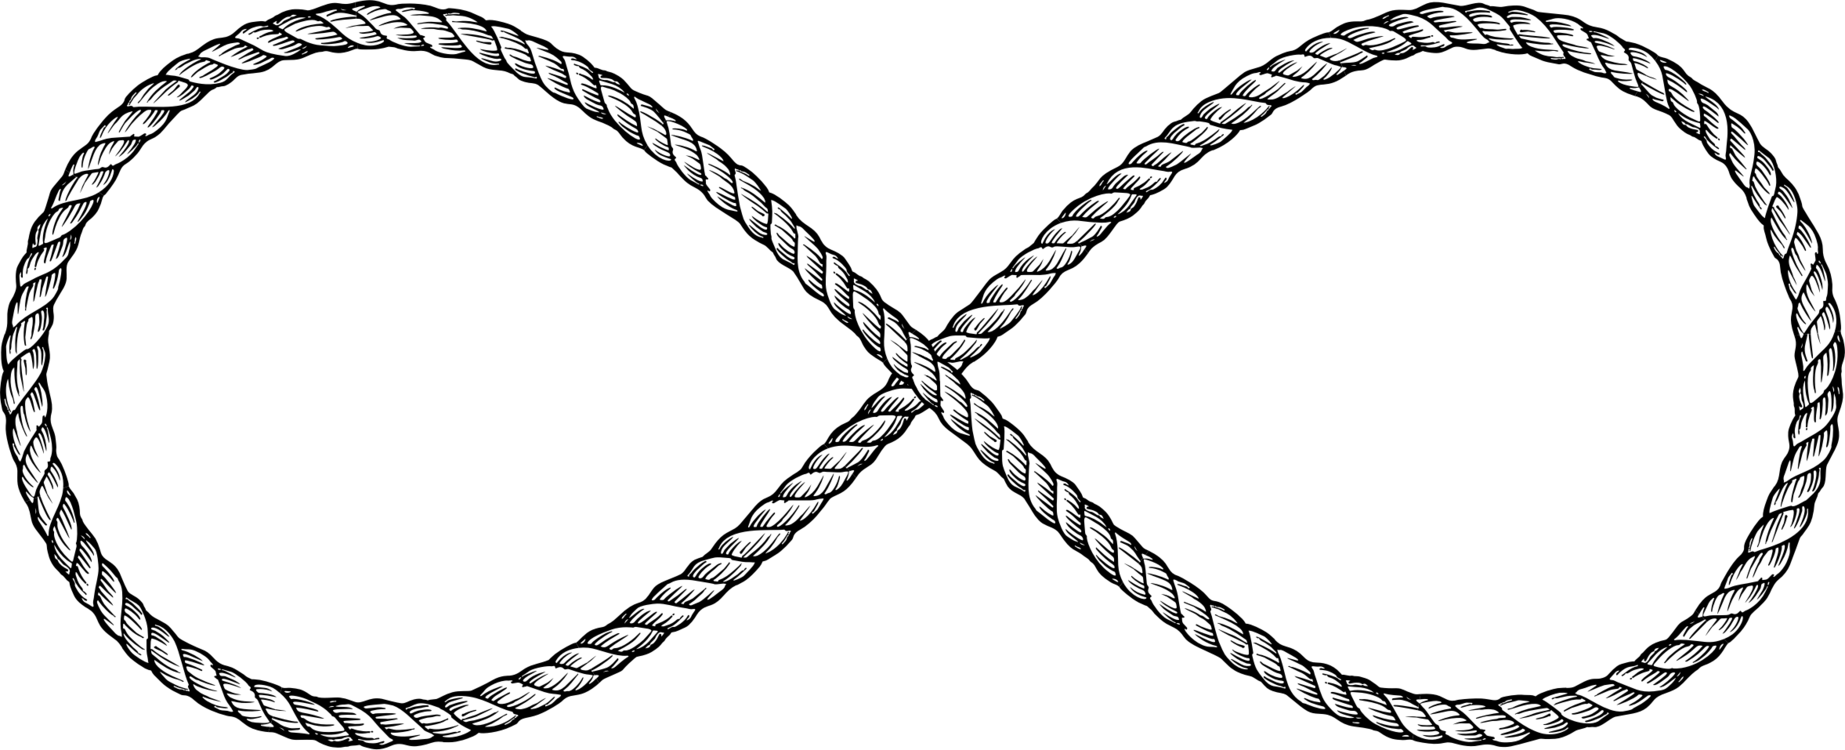 Rope,Line,Blackandwhite